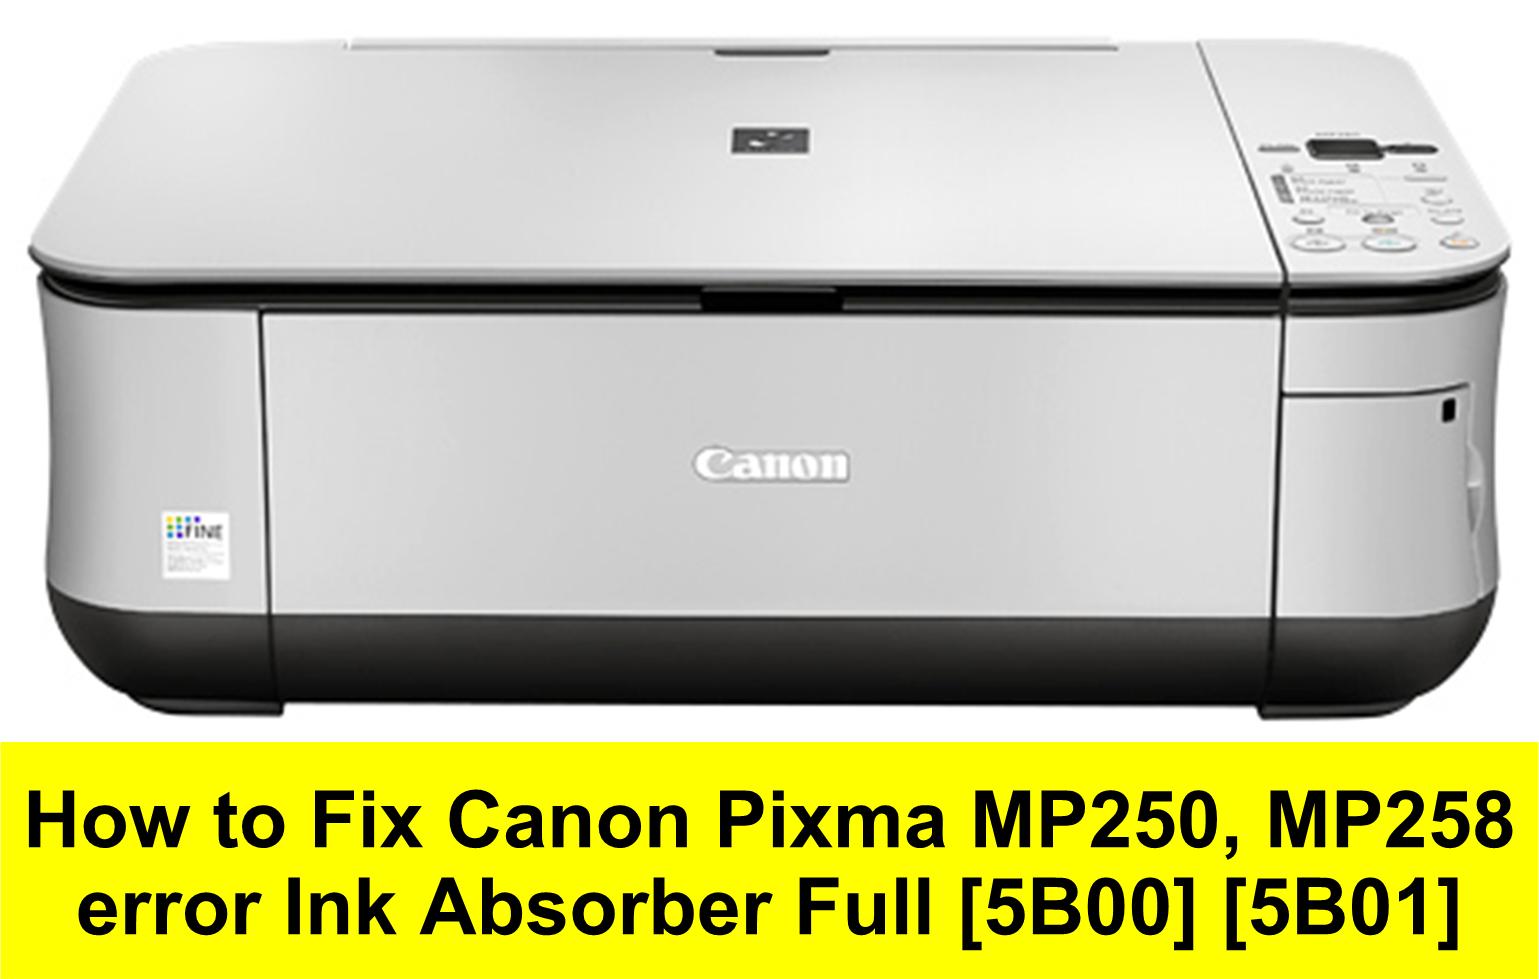 Canon Pixma Mp250 User Manual Download